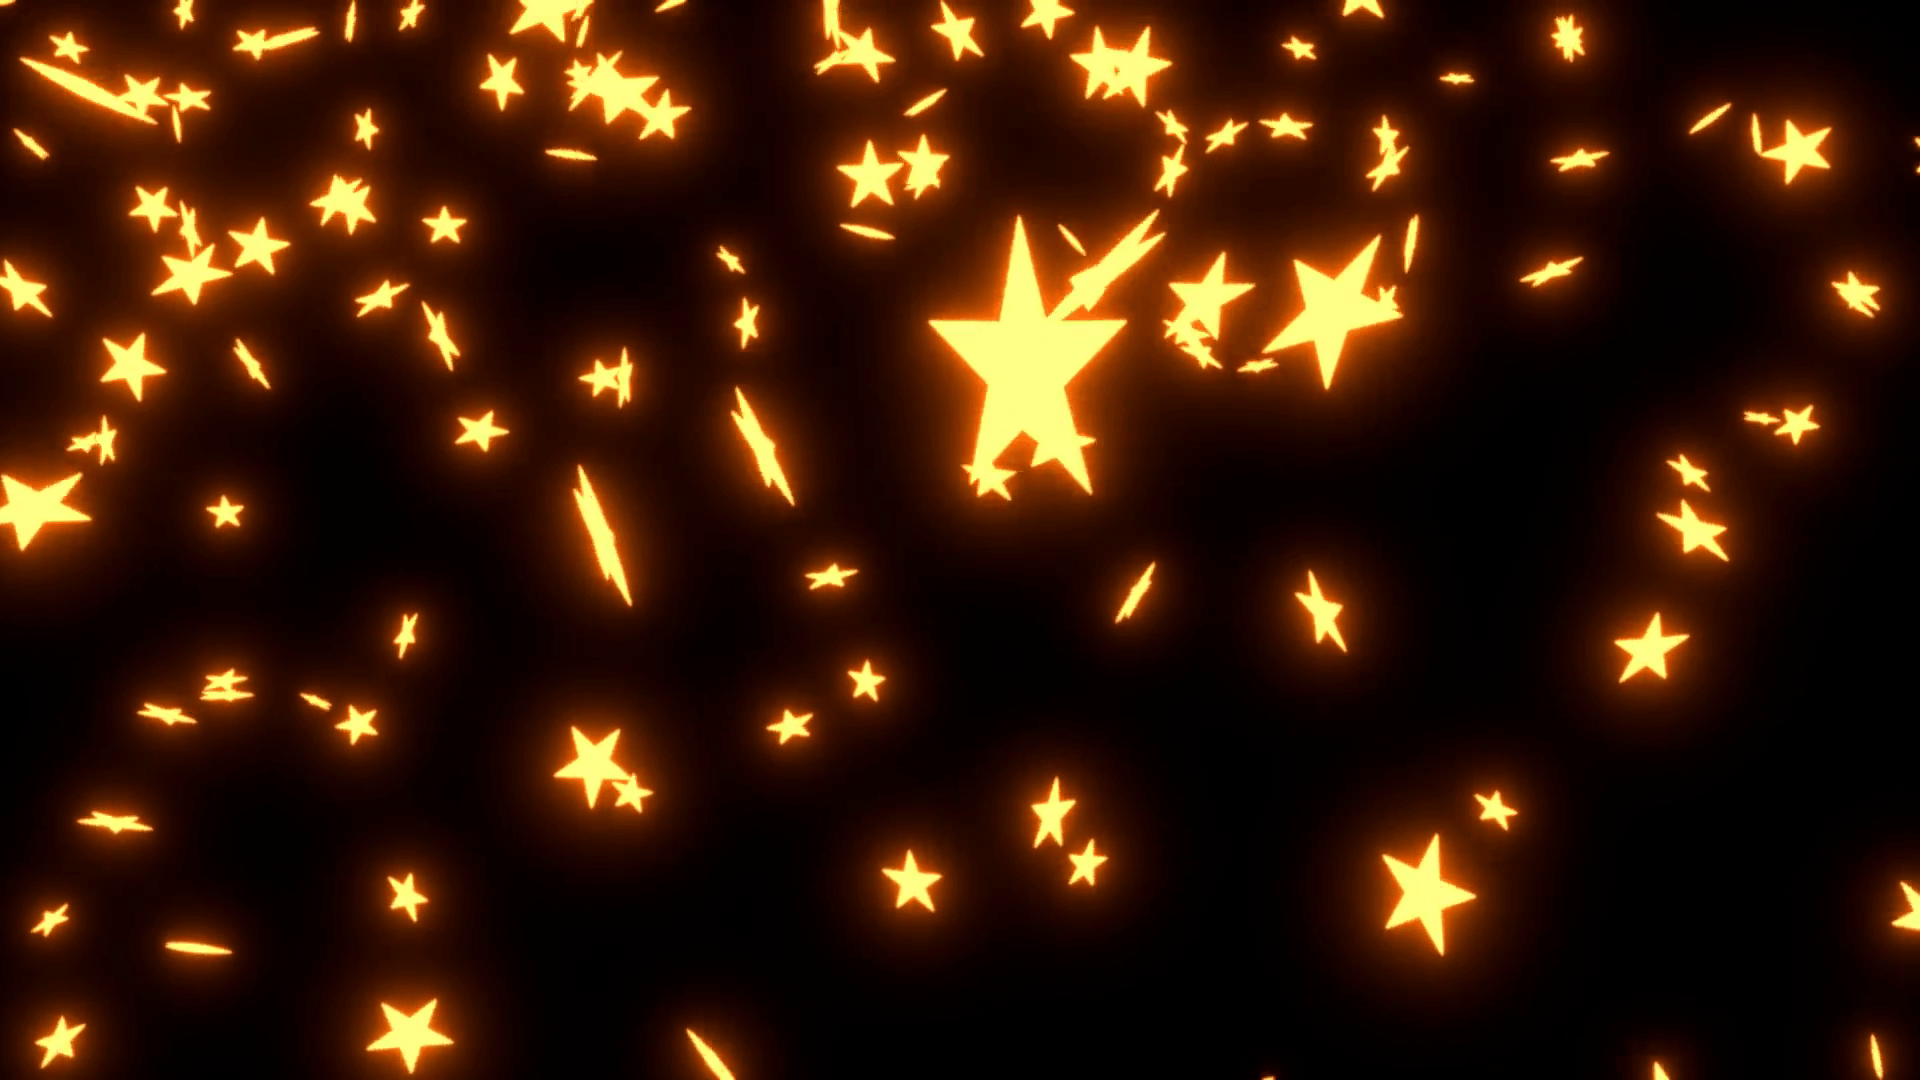 Animated falling neon orange stars on black background. Motion